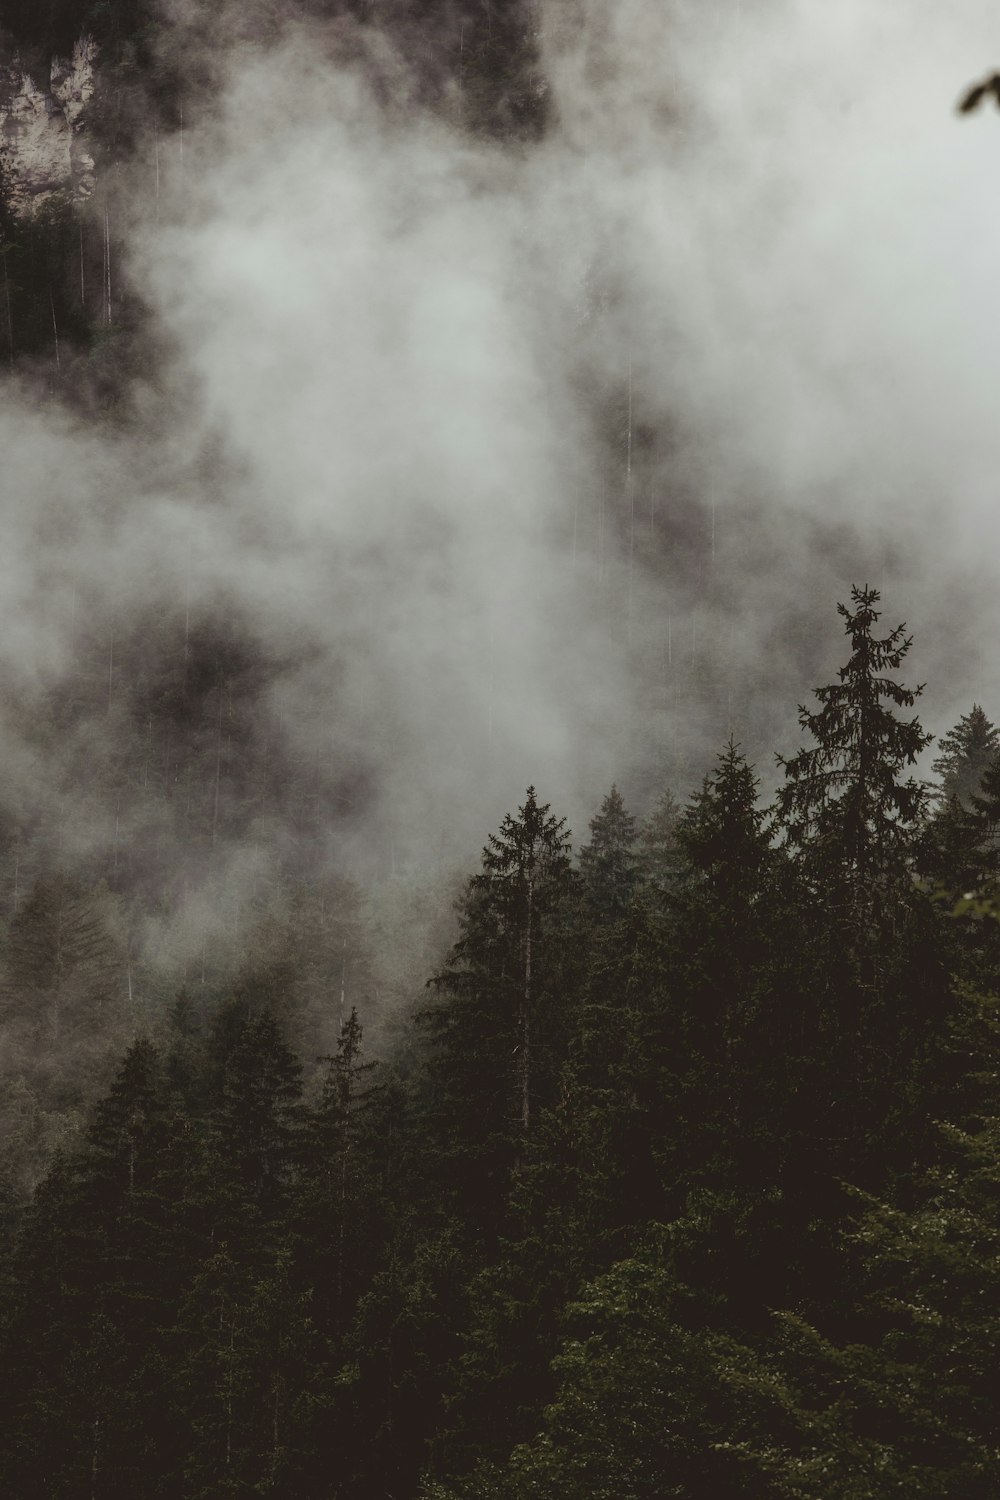 Une forêt remplie de beaucoup d’arbres couverts de brouillard